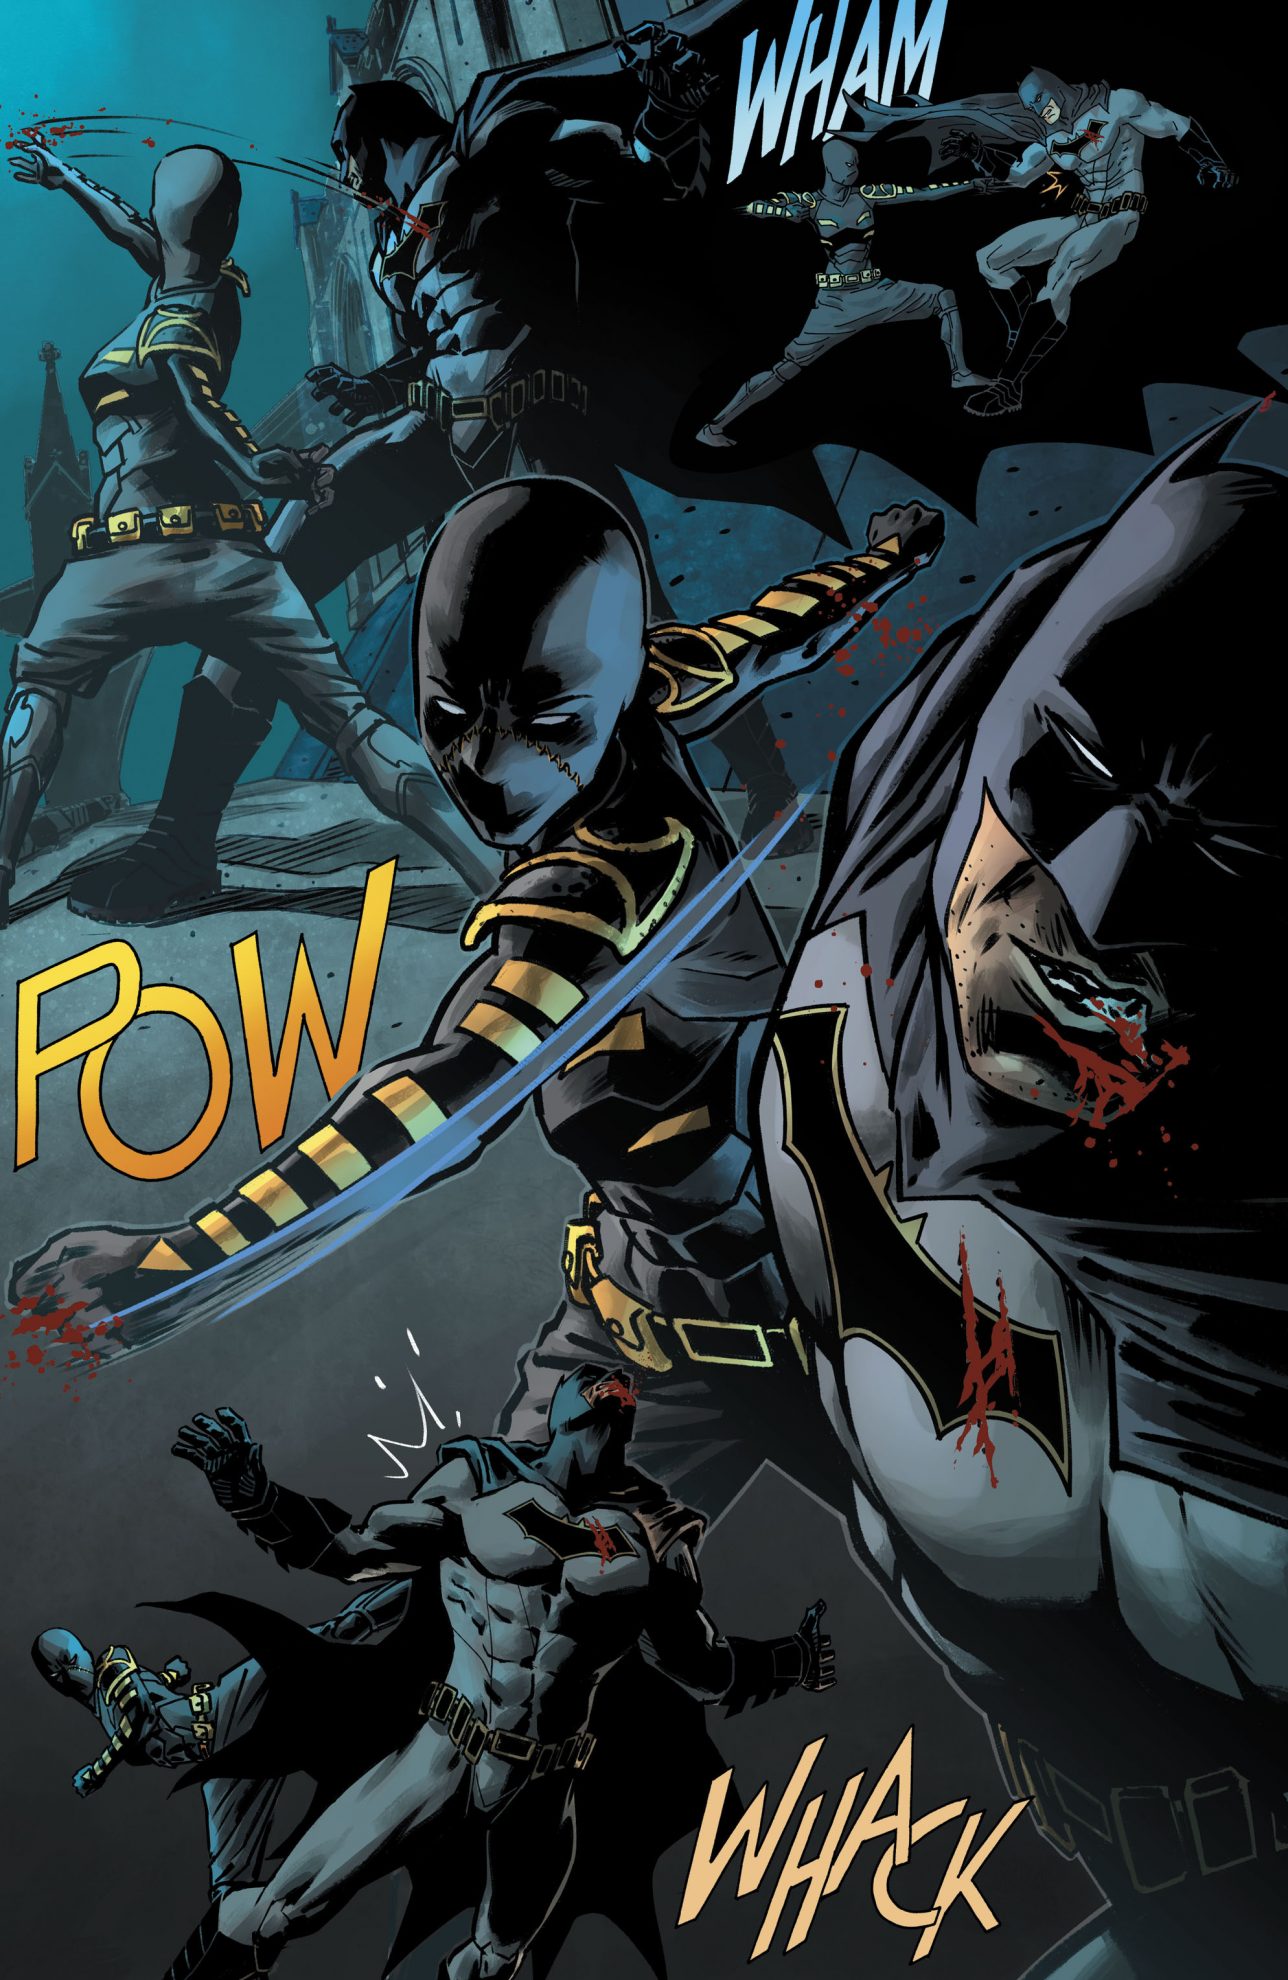 Batman VS Orphan (Detective Comics Vol 1 #953)